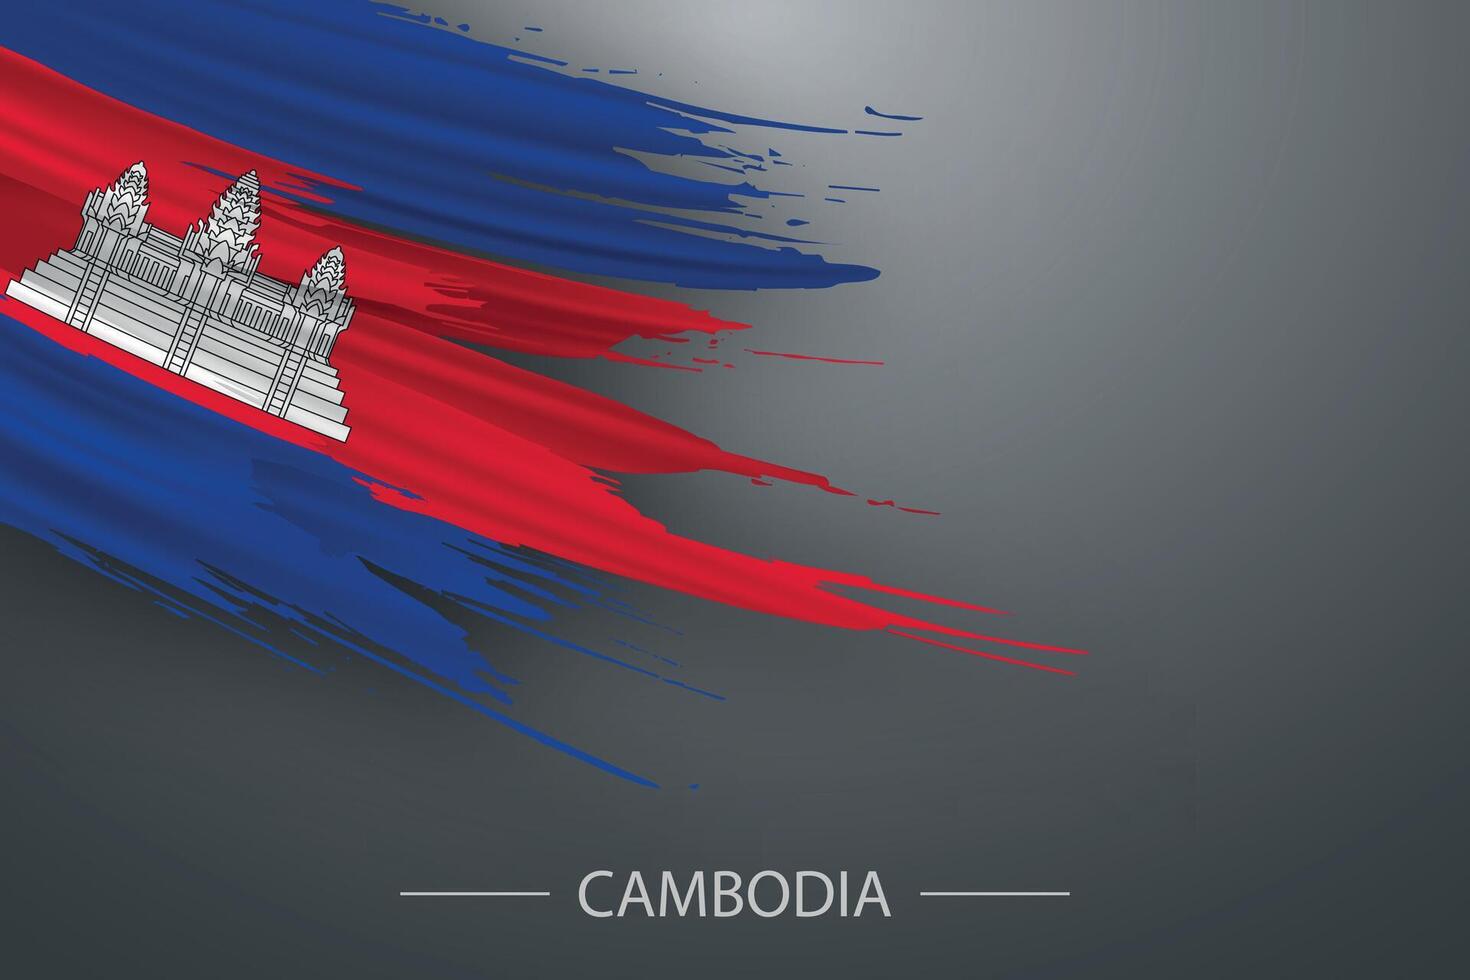 3d grunge brush stroke flag of Cambodia vector